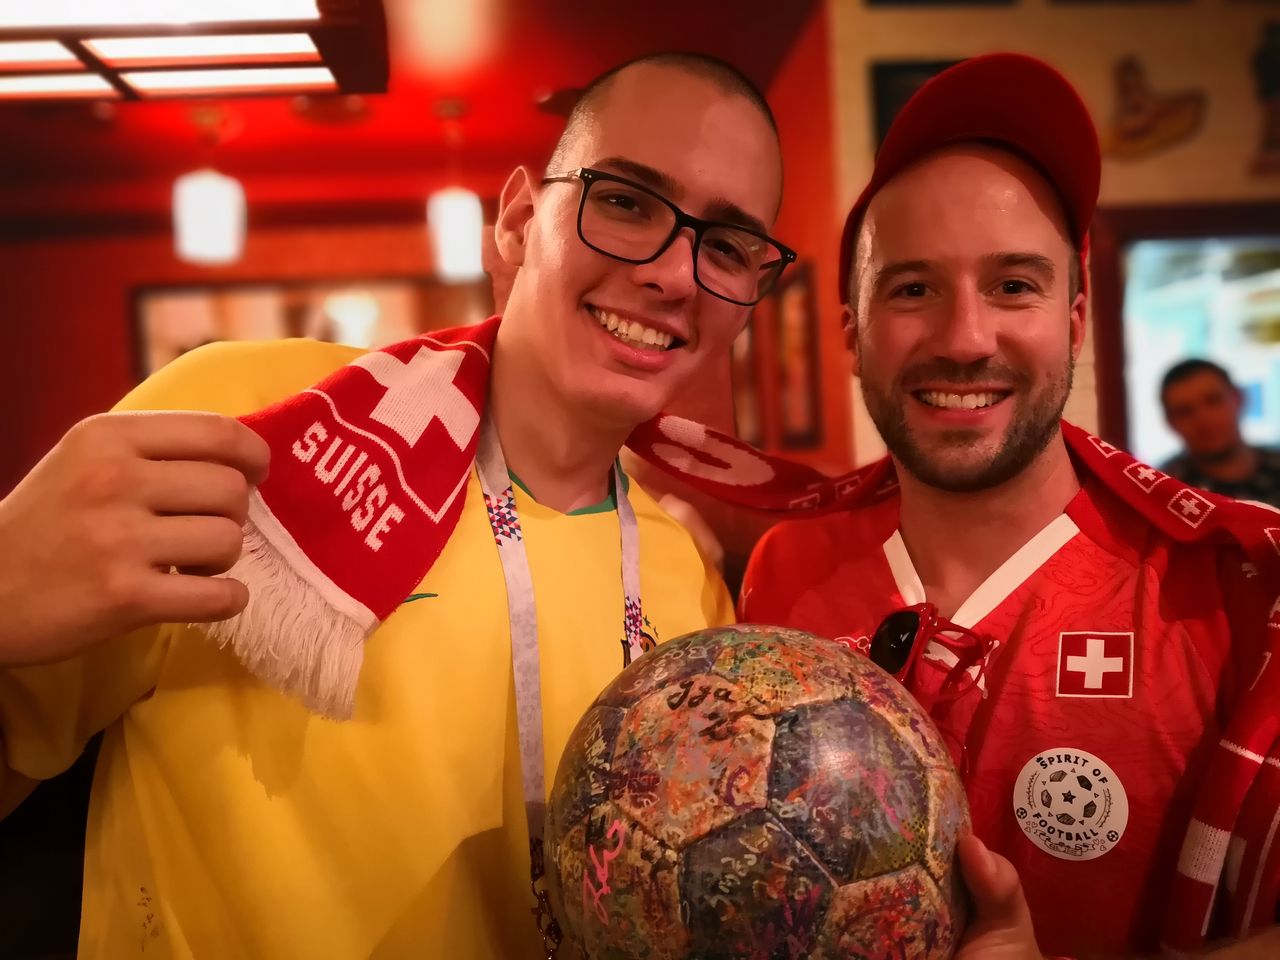 Schweizer und Brasilianische Fans feiern gemeinsam.